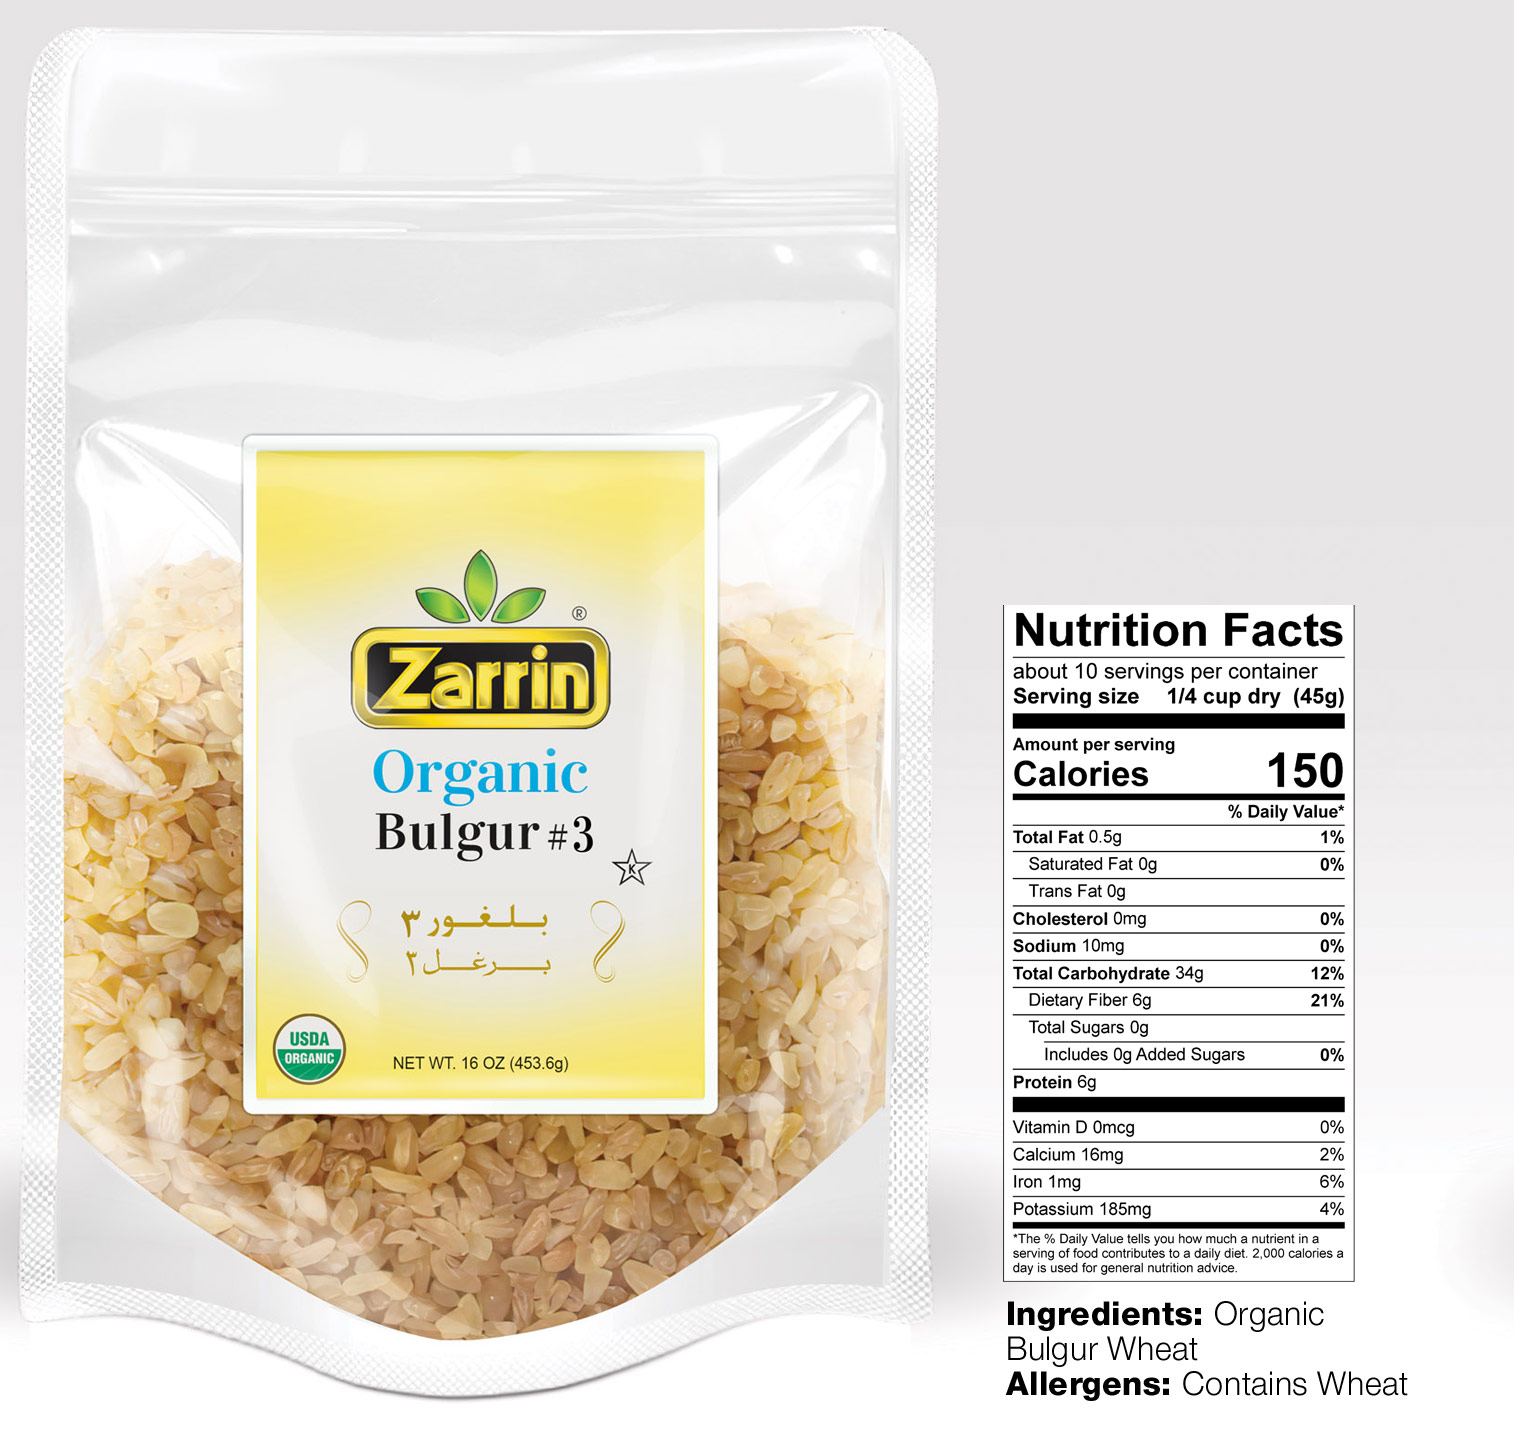 Organic Bulgur #3 in 16oz bag by Zarrin.